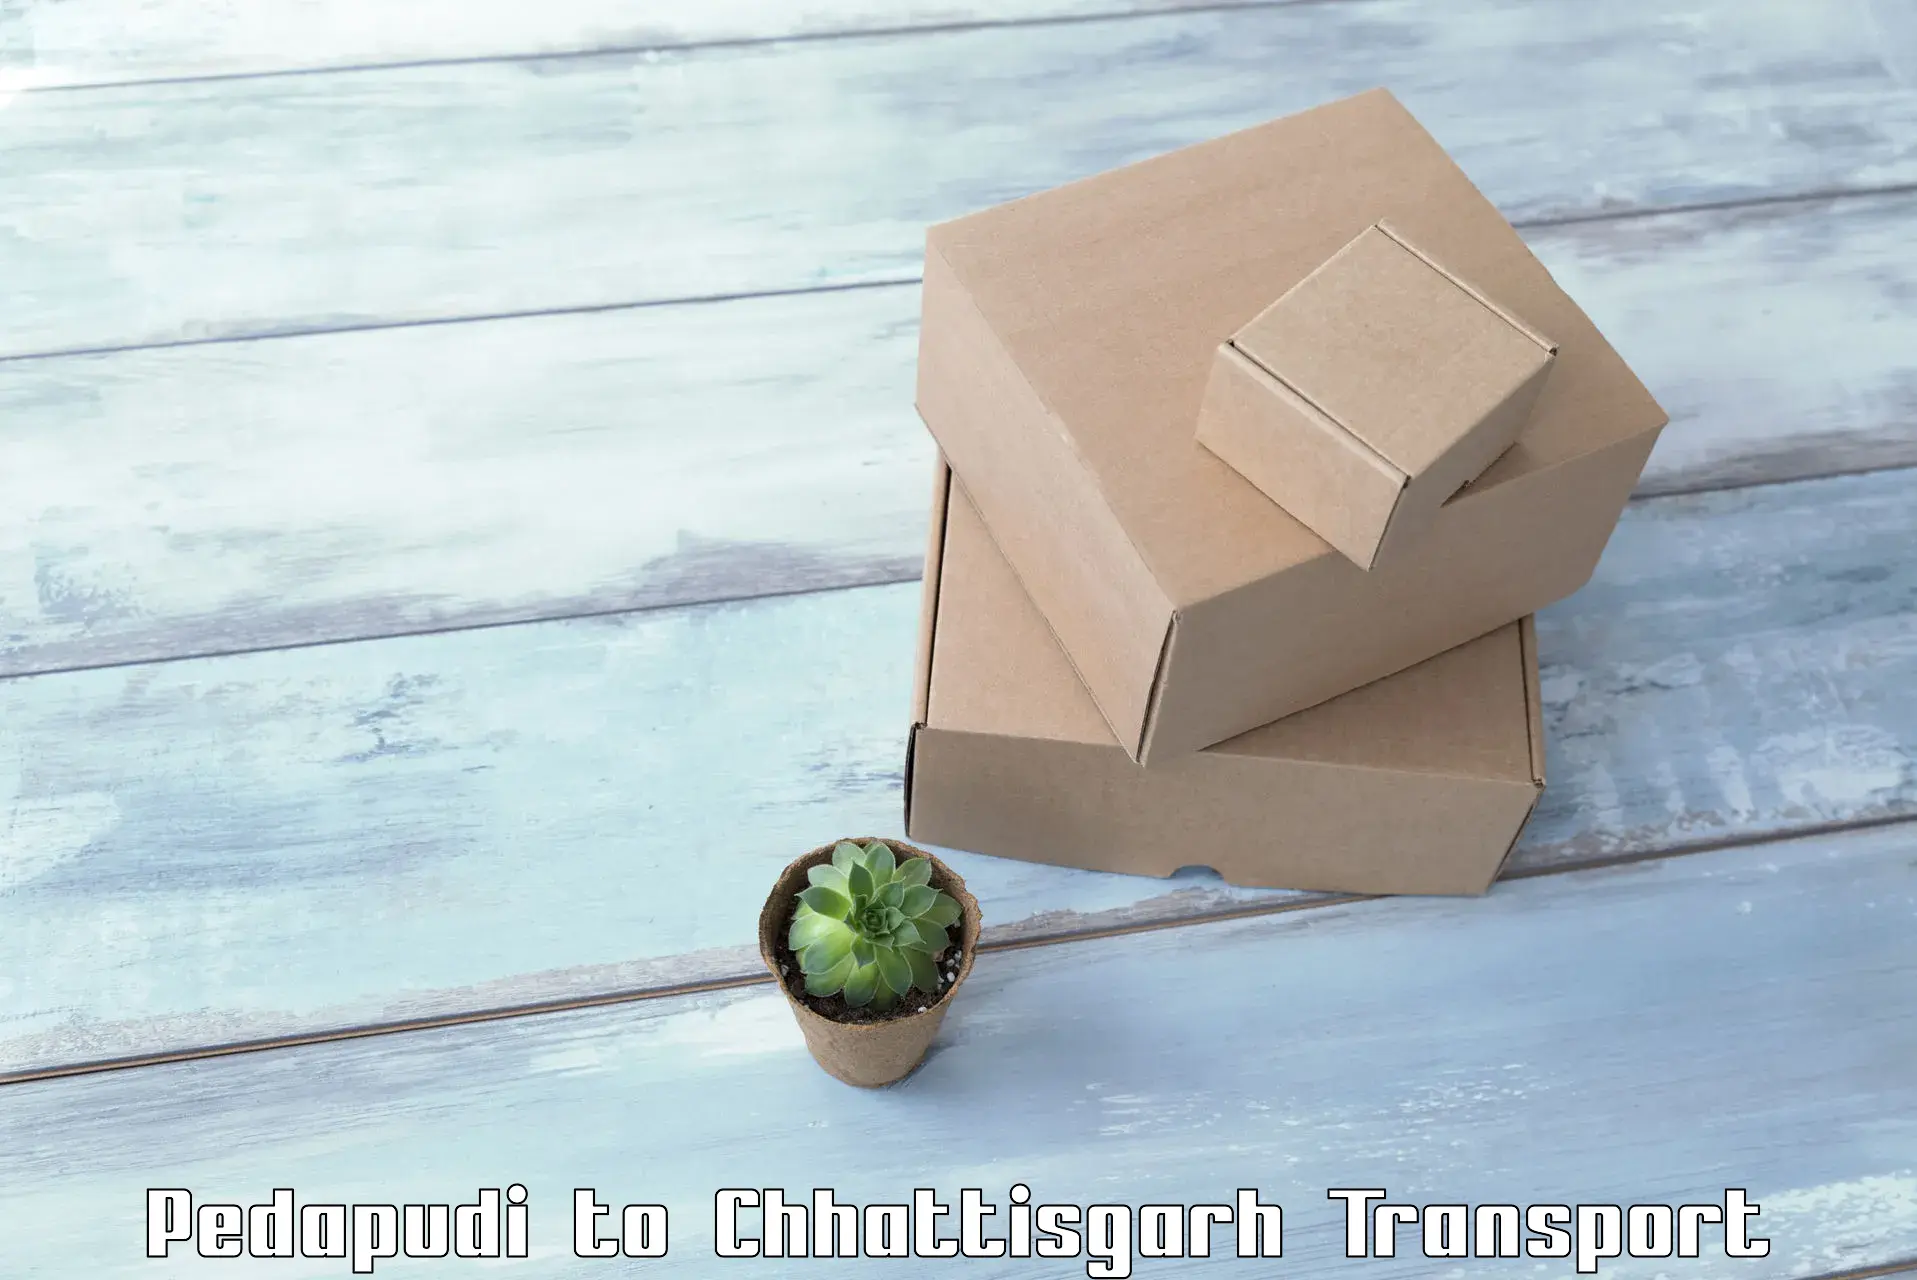 Container transport service in Pedapudi to Chhattisgarh